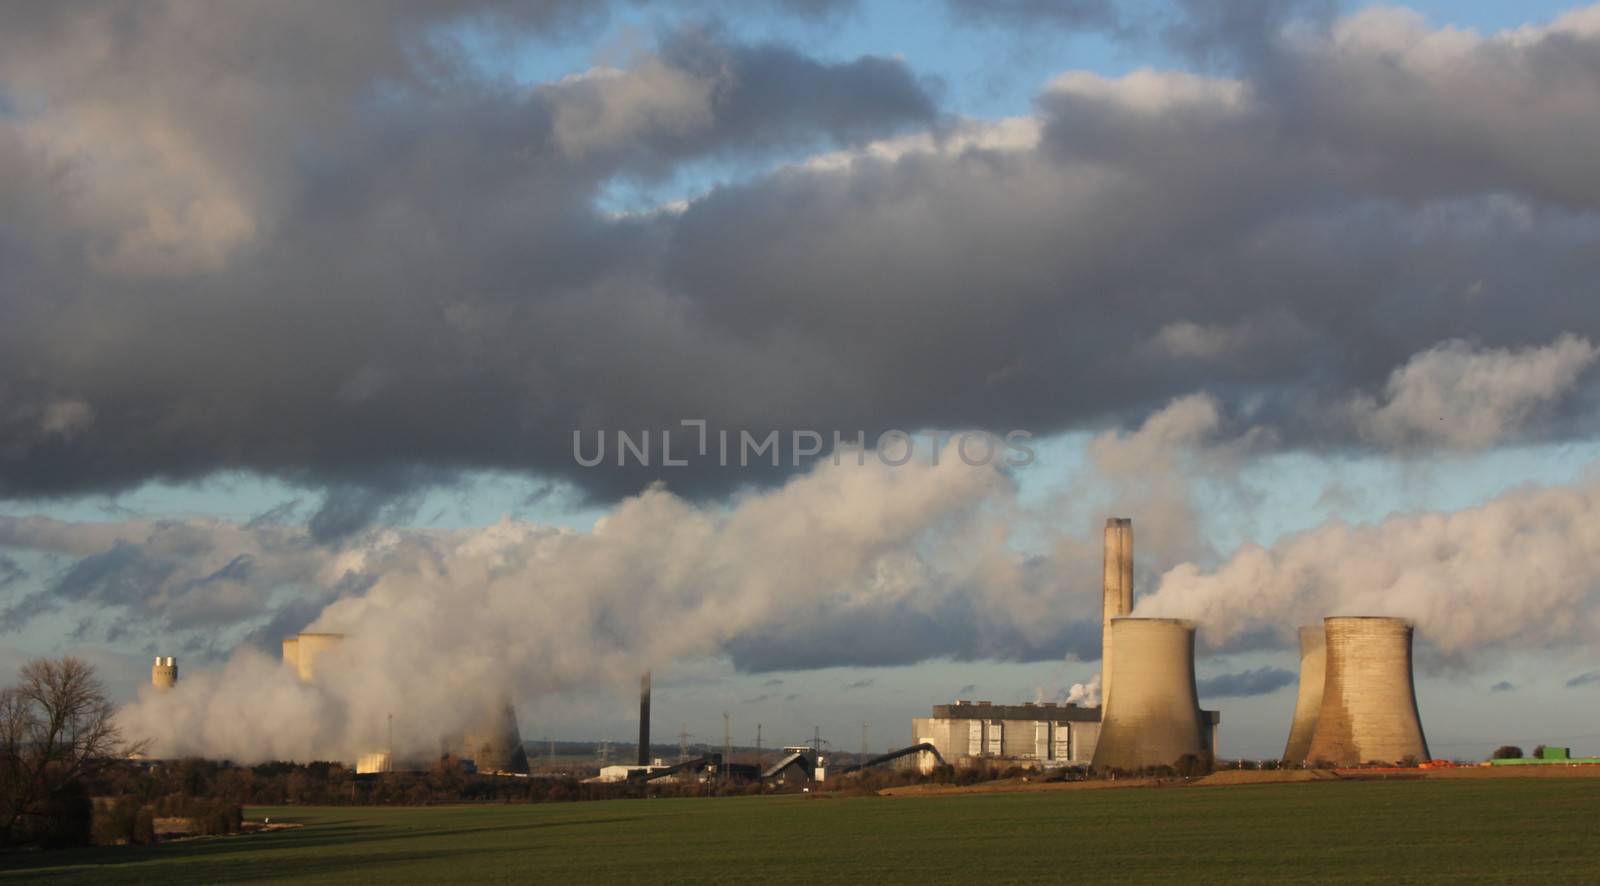 Weston Super Mare power plant by olliemt